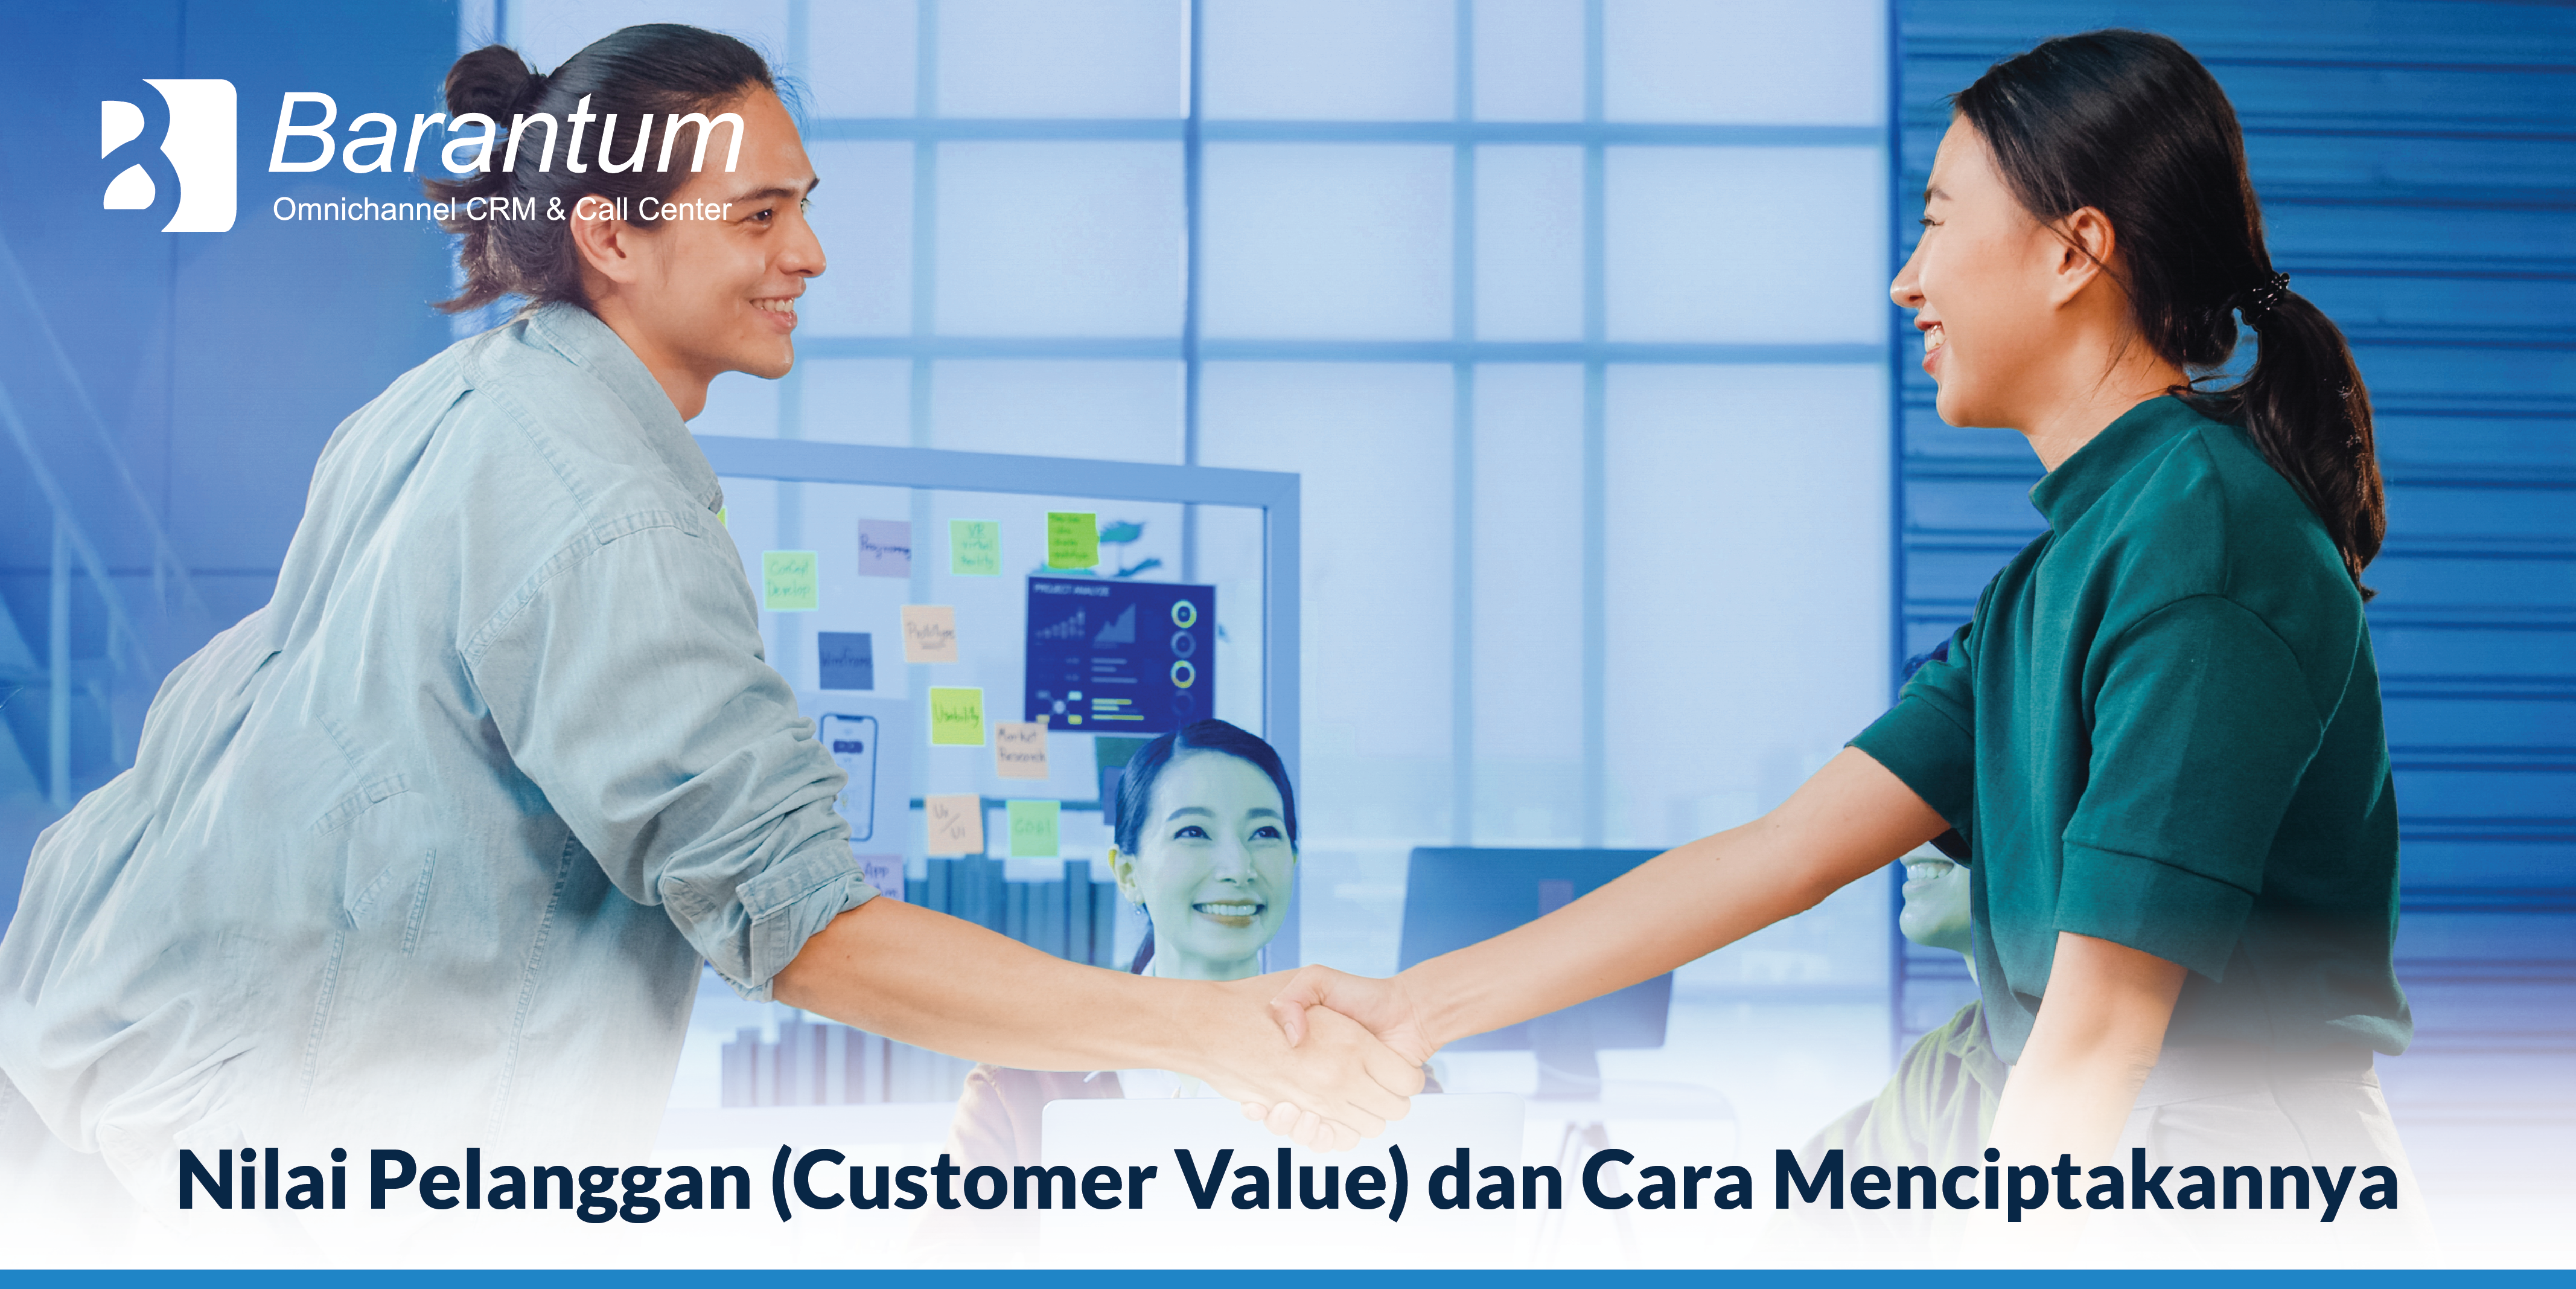 nilai pelanggan - Barantum CRM Call Center